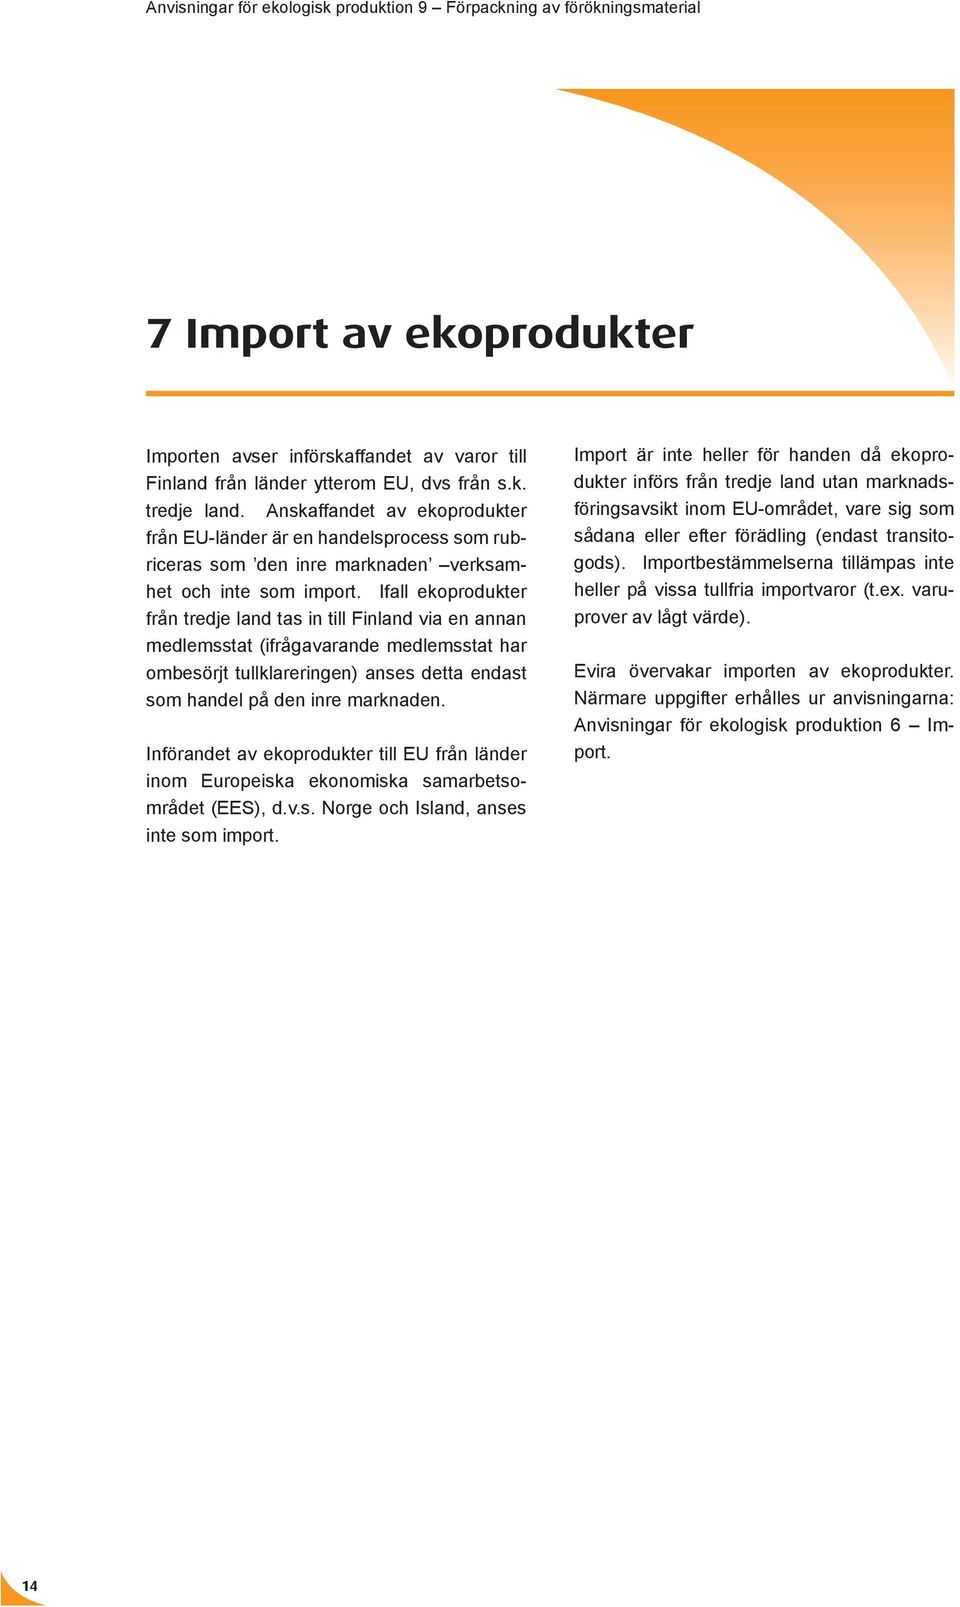 Ifall ekoprodukter från tredje land tas in till Finland via en annan medlemsstat (ifrågavarande medlemsstat har ombesörjt tullklareringen) anses detta endast som handel på den inre marknaden.